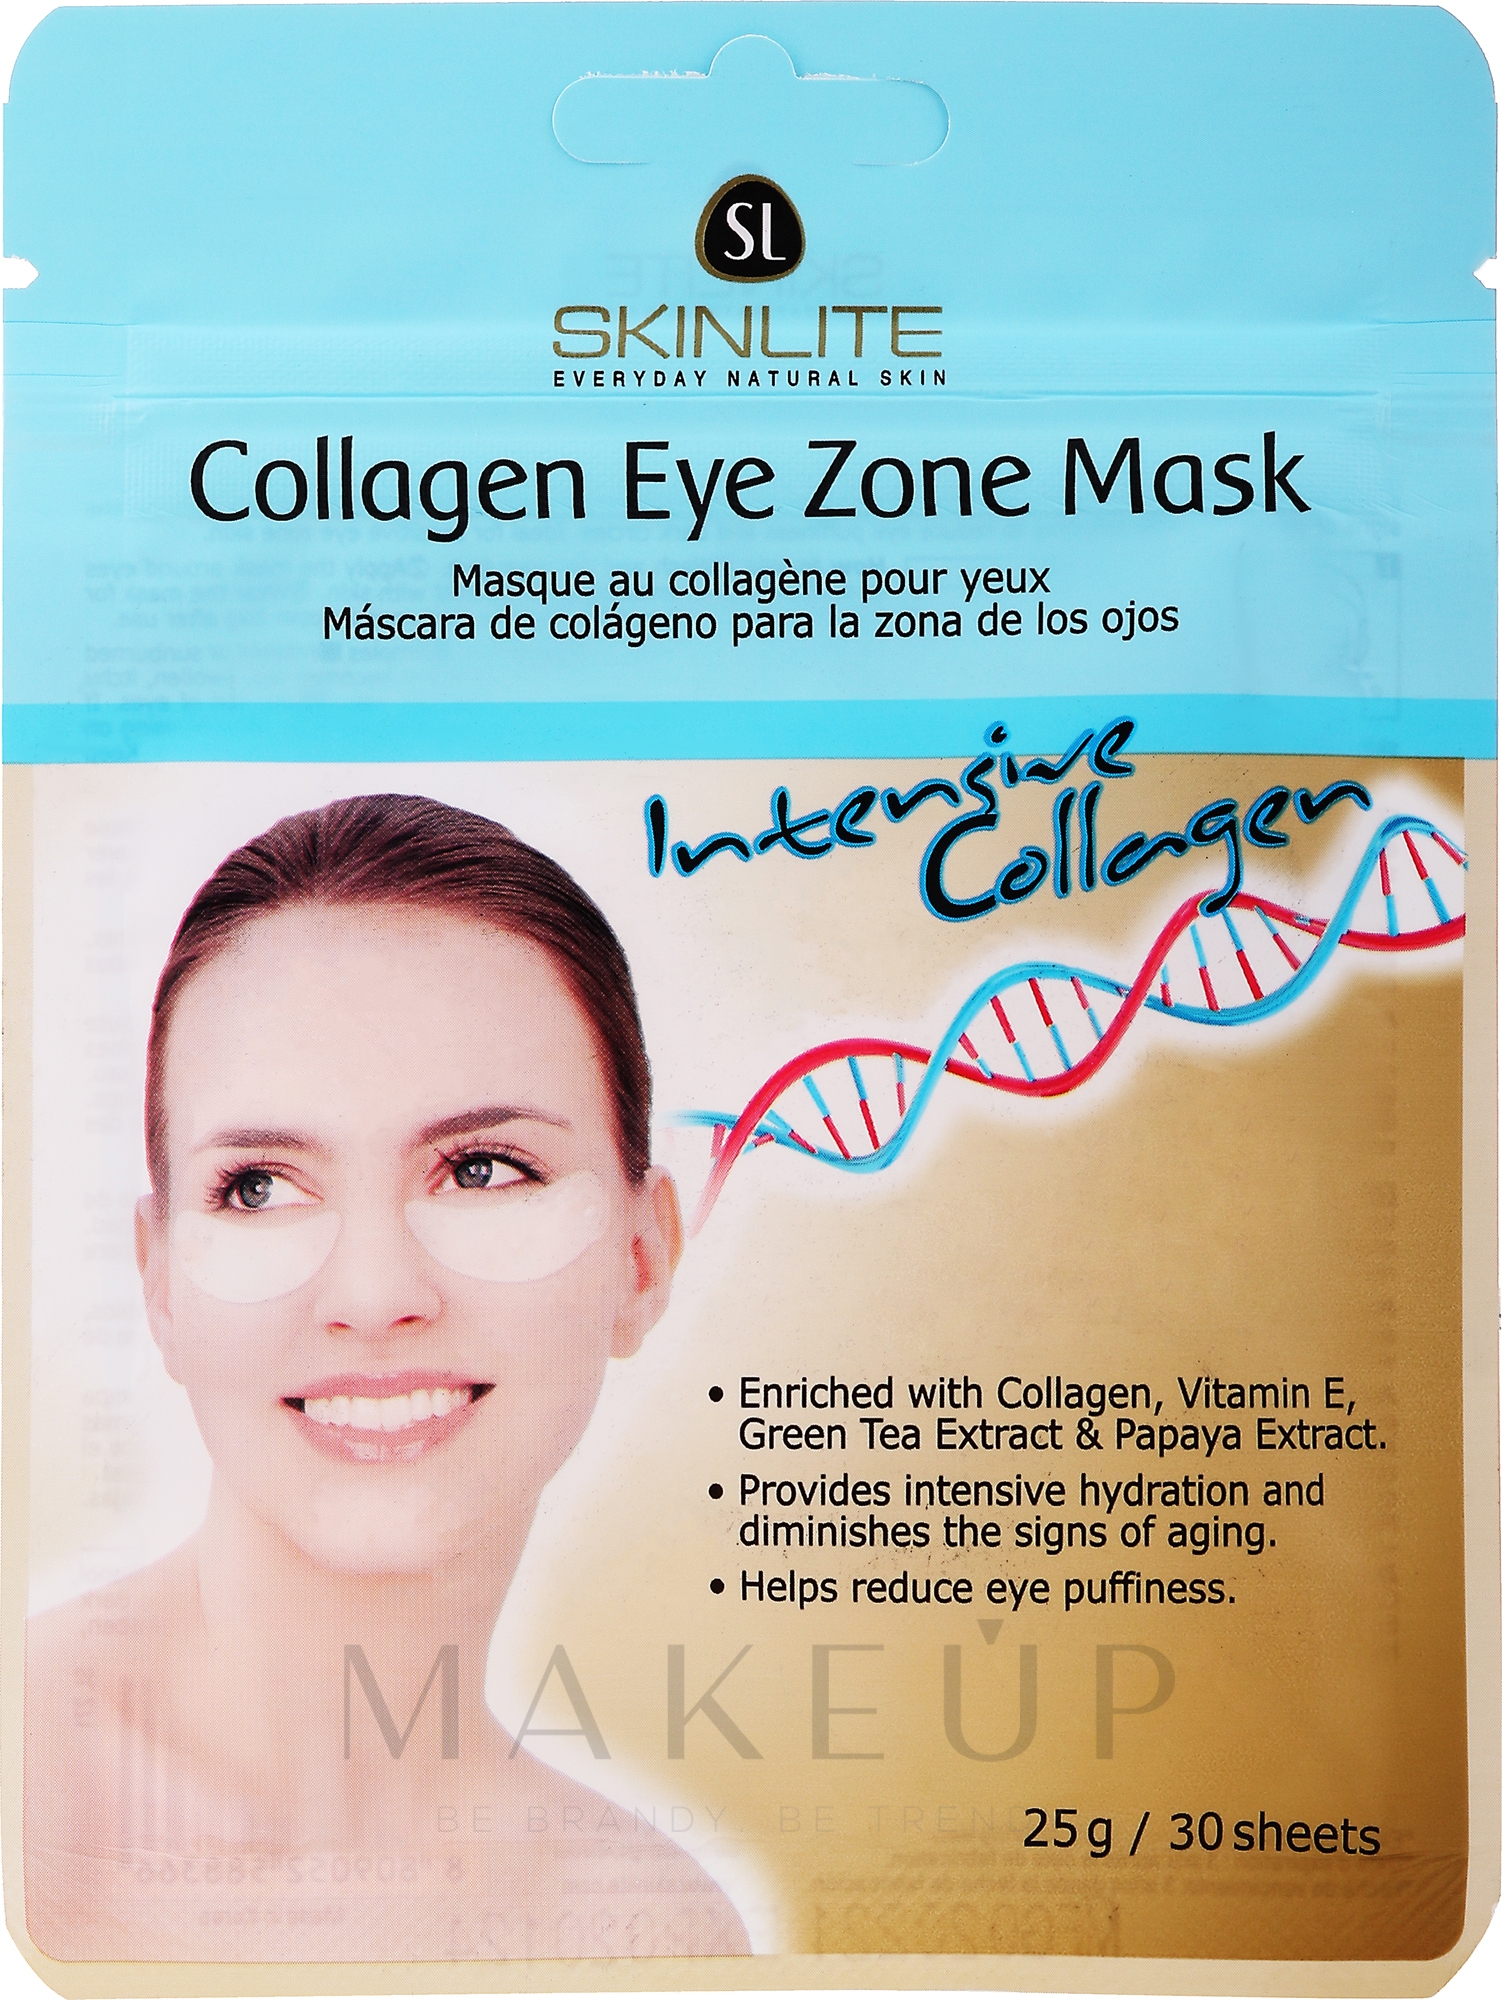 Verjüngende Patch-Maske für die Augenkontur mit Kollagen, Vitamin E und Grüntee-Extrakt - Skinlite Collagen Eye Zone Mask — Foto 30 St.